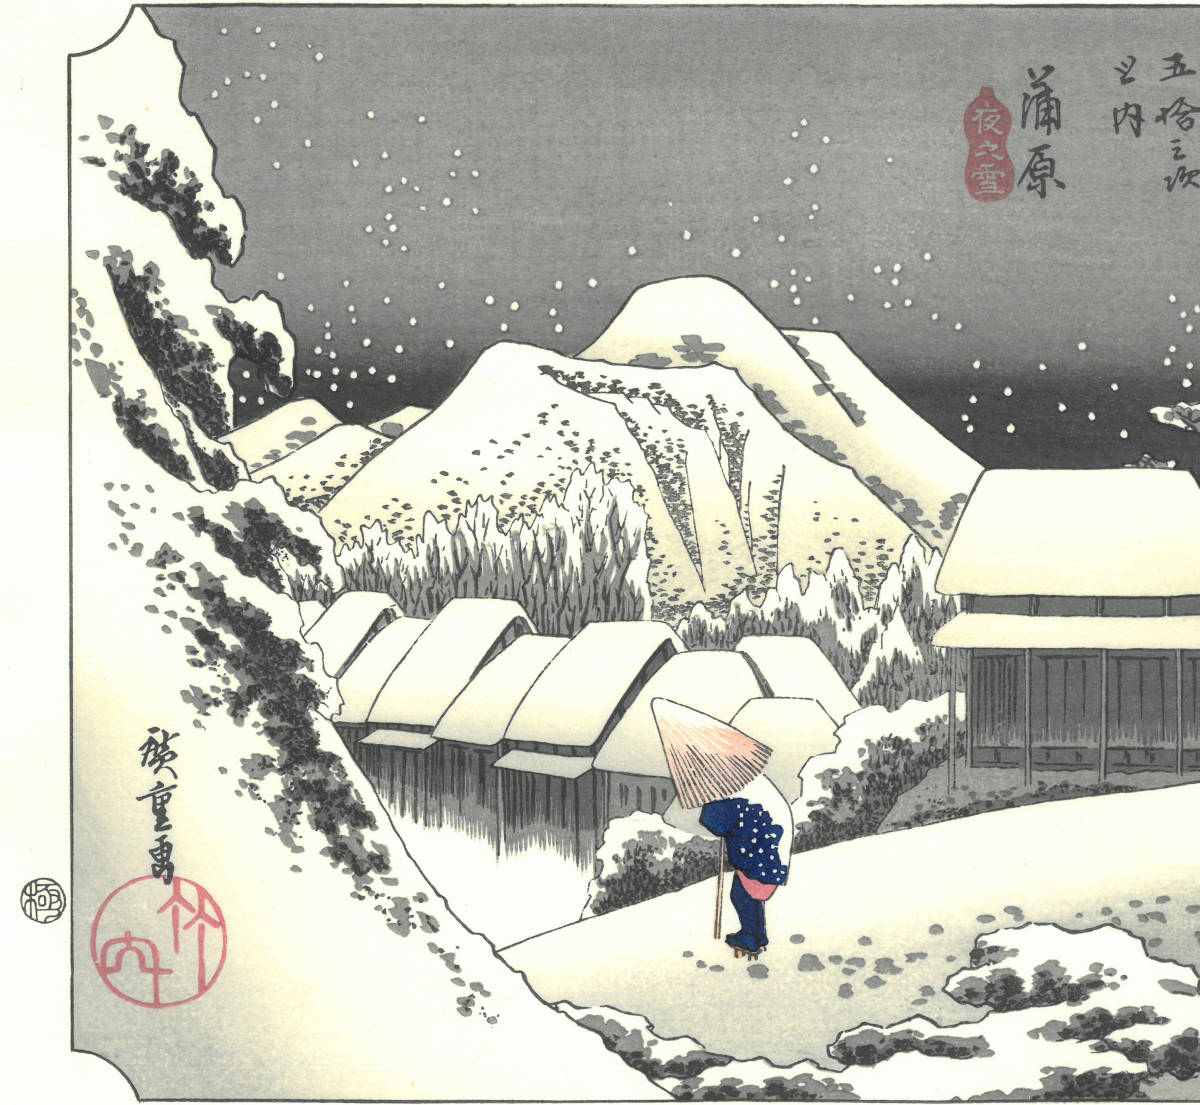 歌川広重 (Utagawa Hiroshige) (1797-1858) 木版画 東海道五十三次 #16